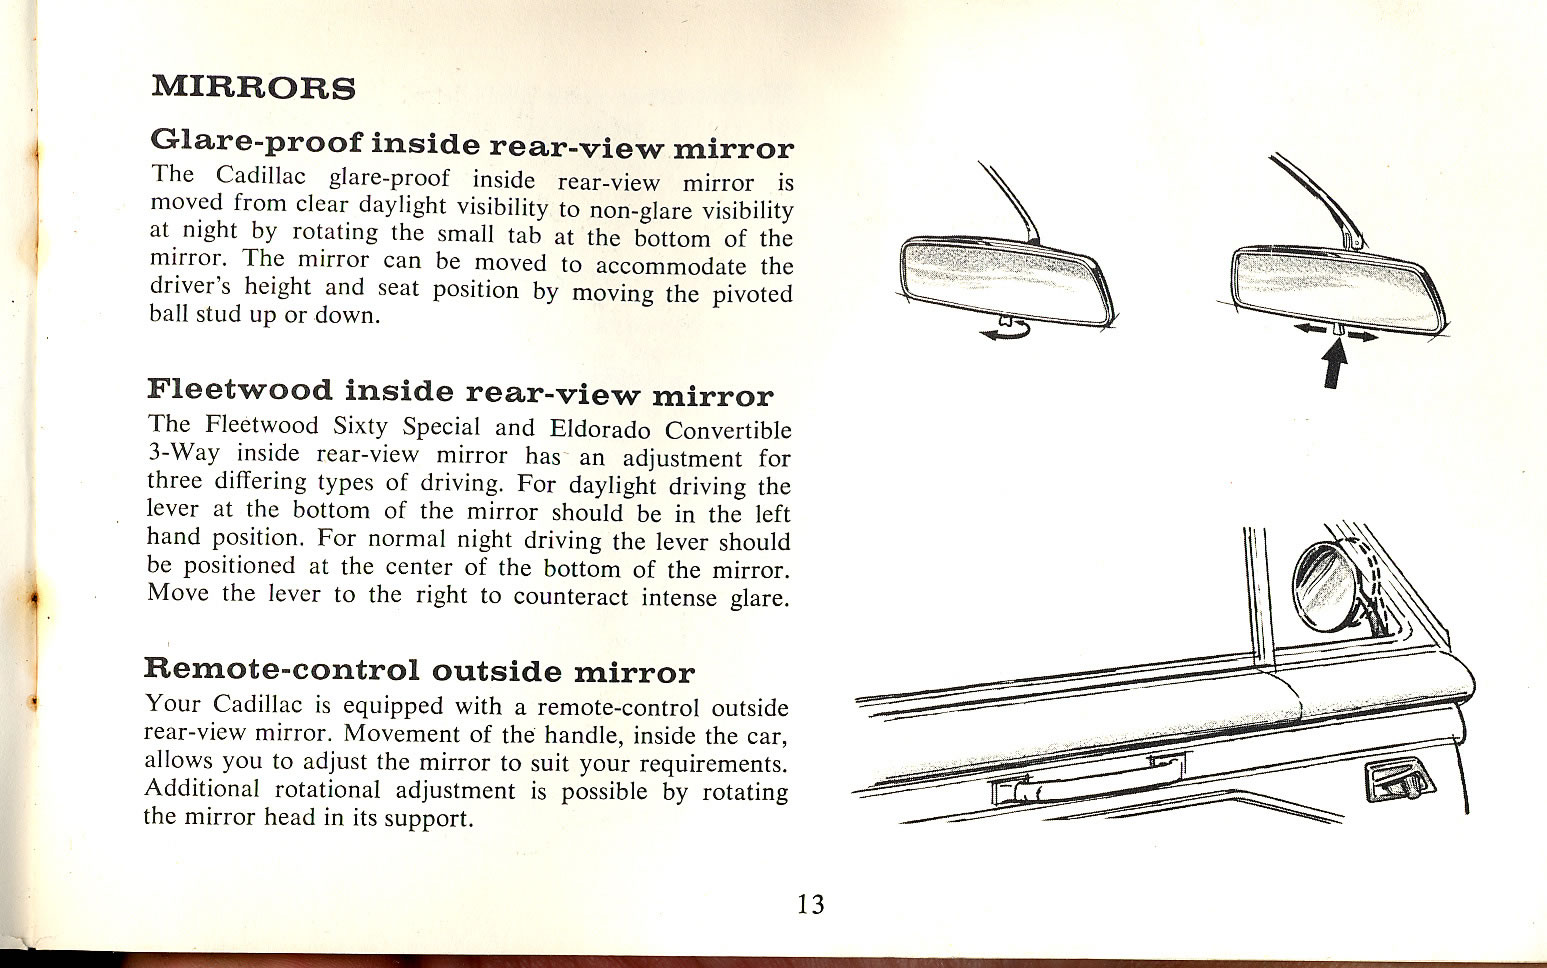 1965_Cadillac_Manual-13